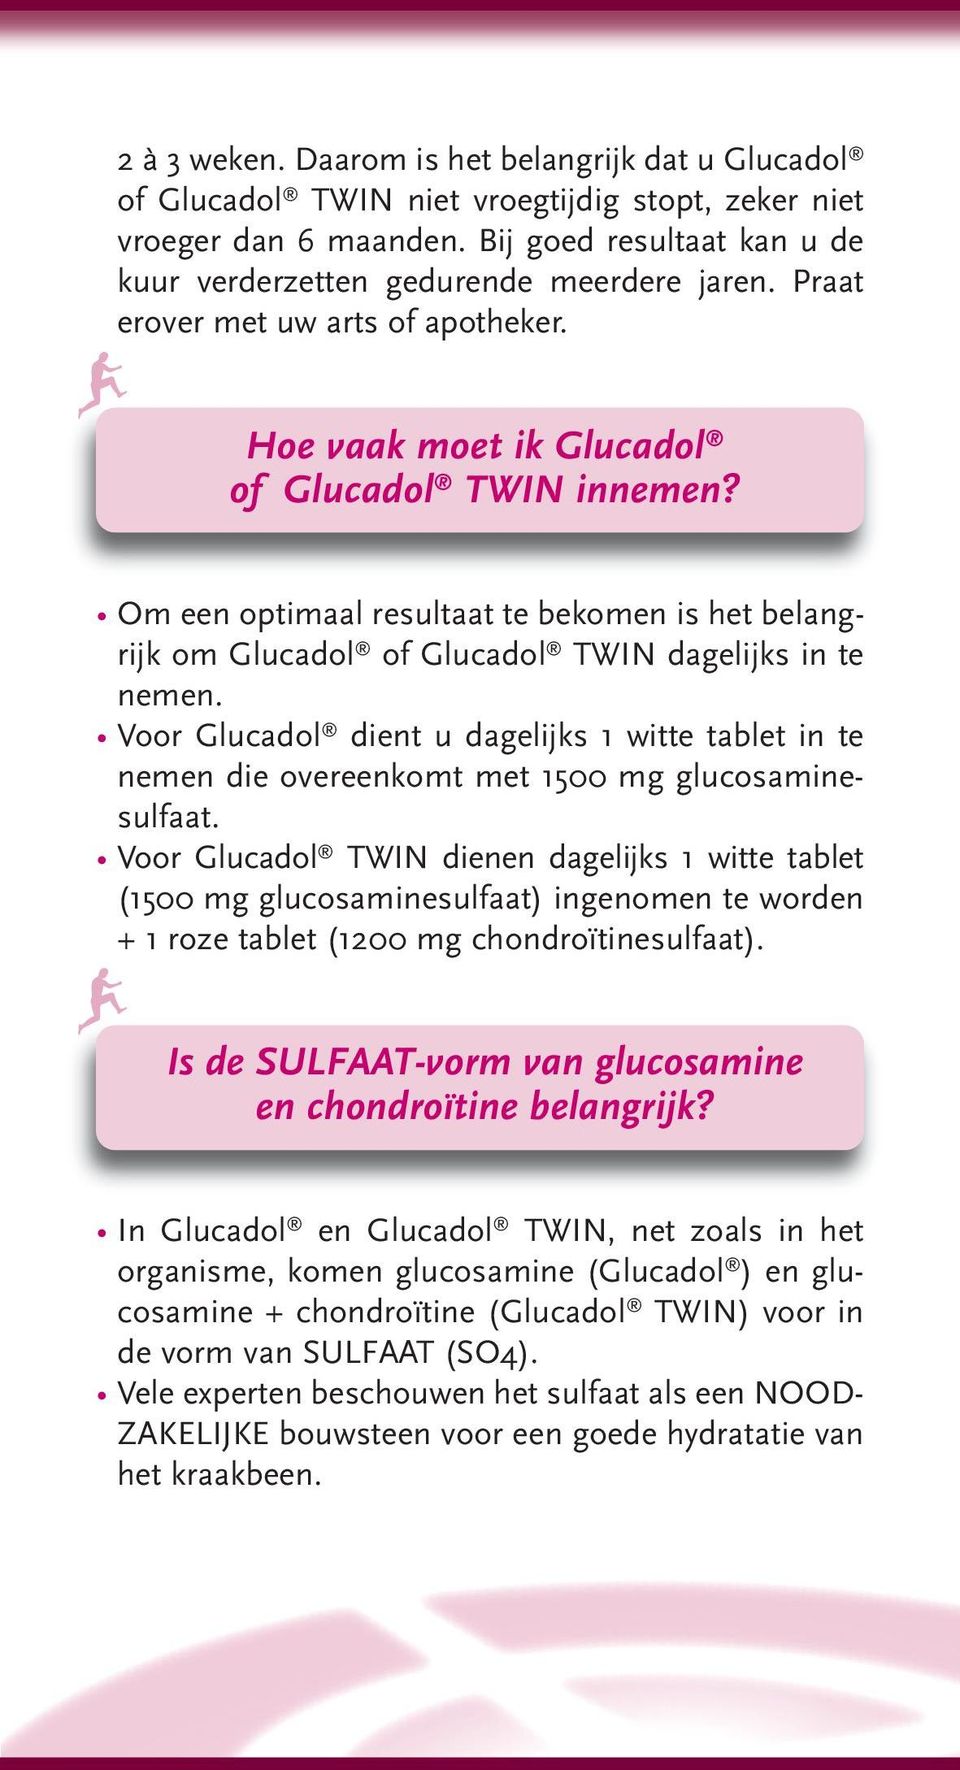 Voor Glucadol dient u dagelijks 1 witte tablet in te nemen die overeenkomt met 1500 mg glucosaminesulfaat.